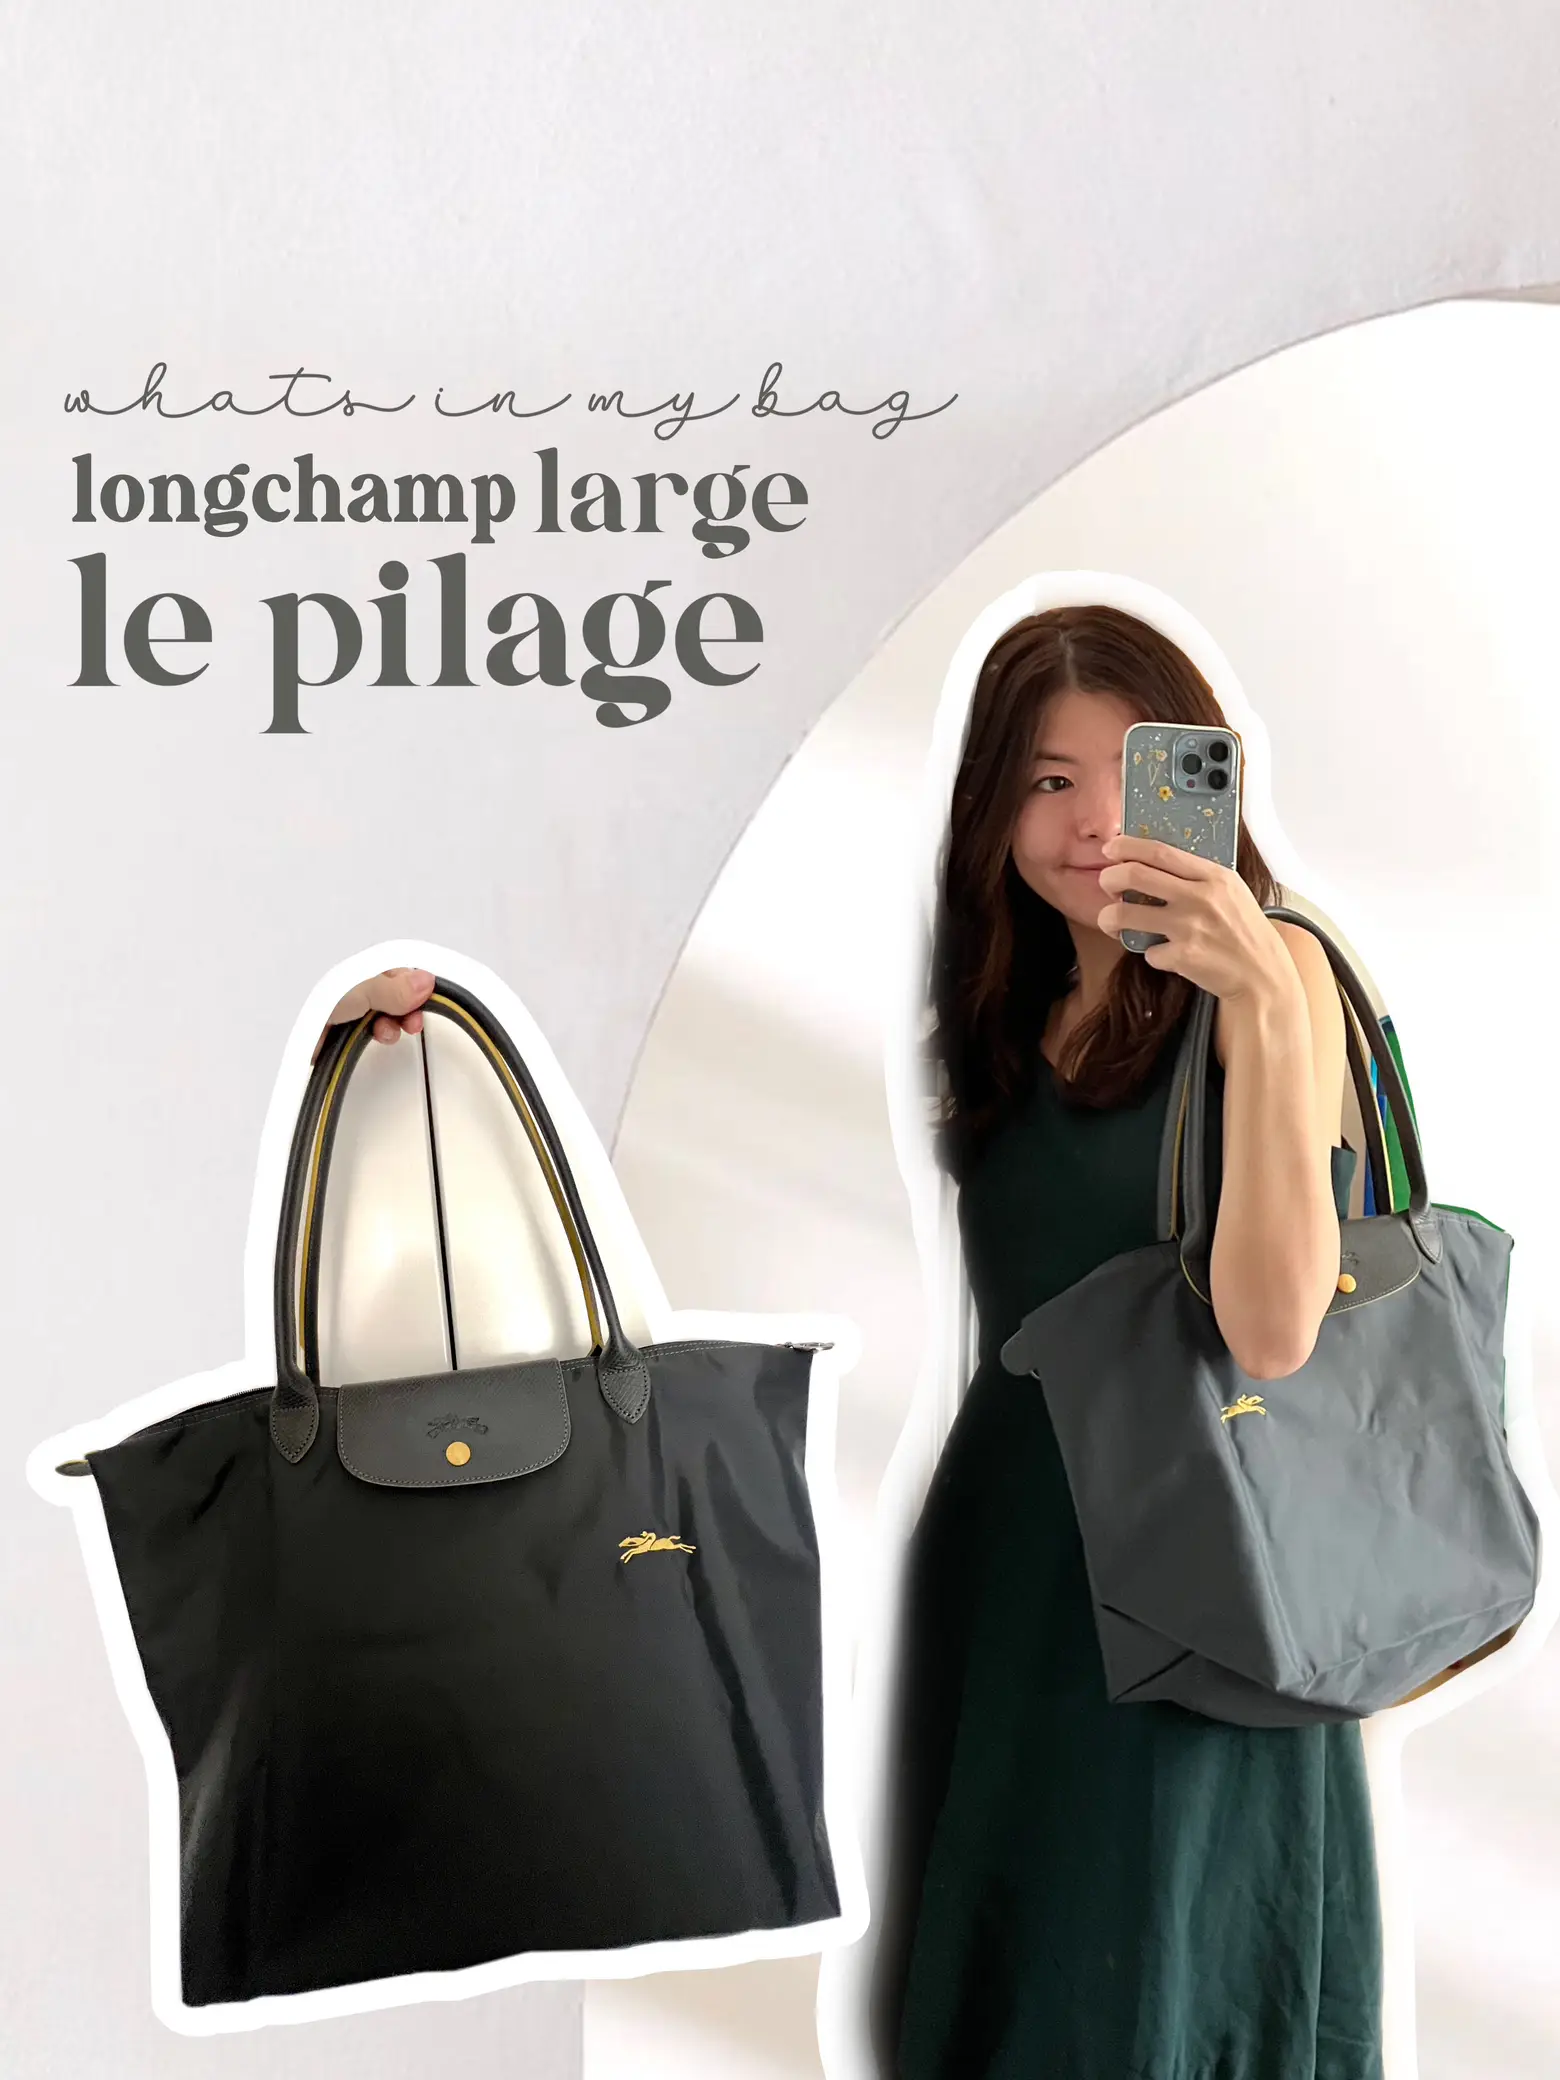 THE BAG REVIEW: LONGCHAMP LE PLIAGE CLUB